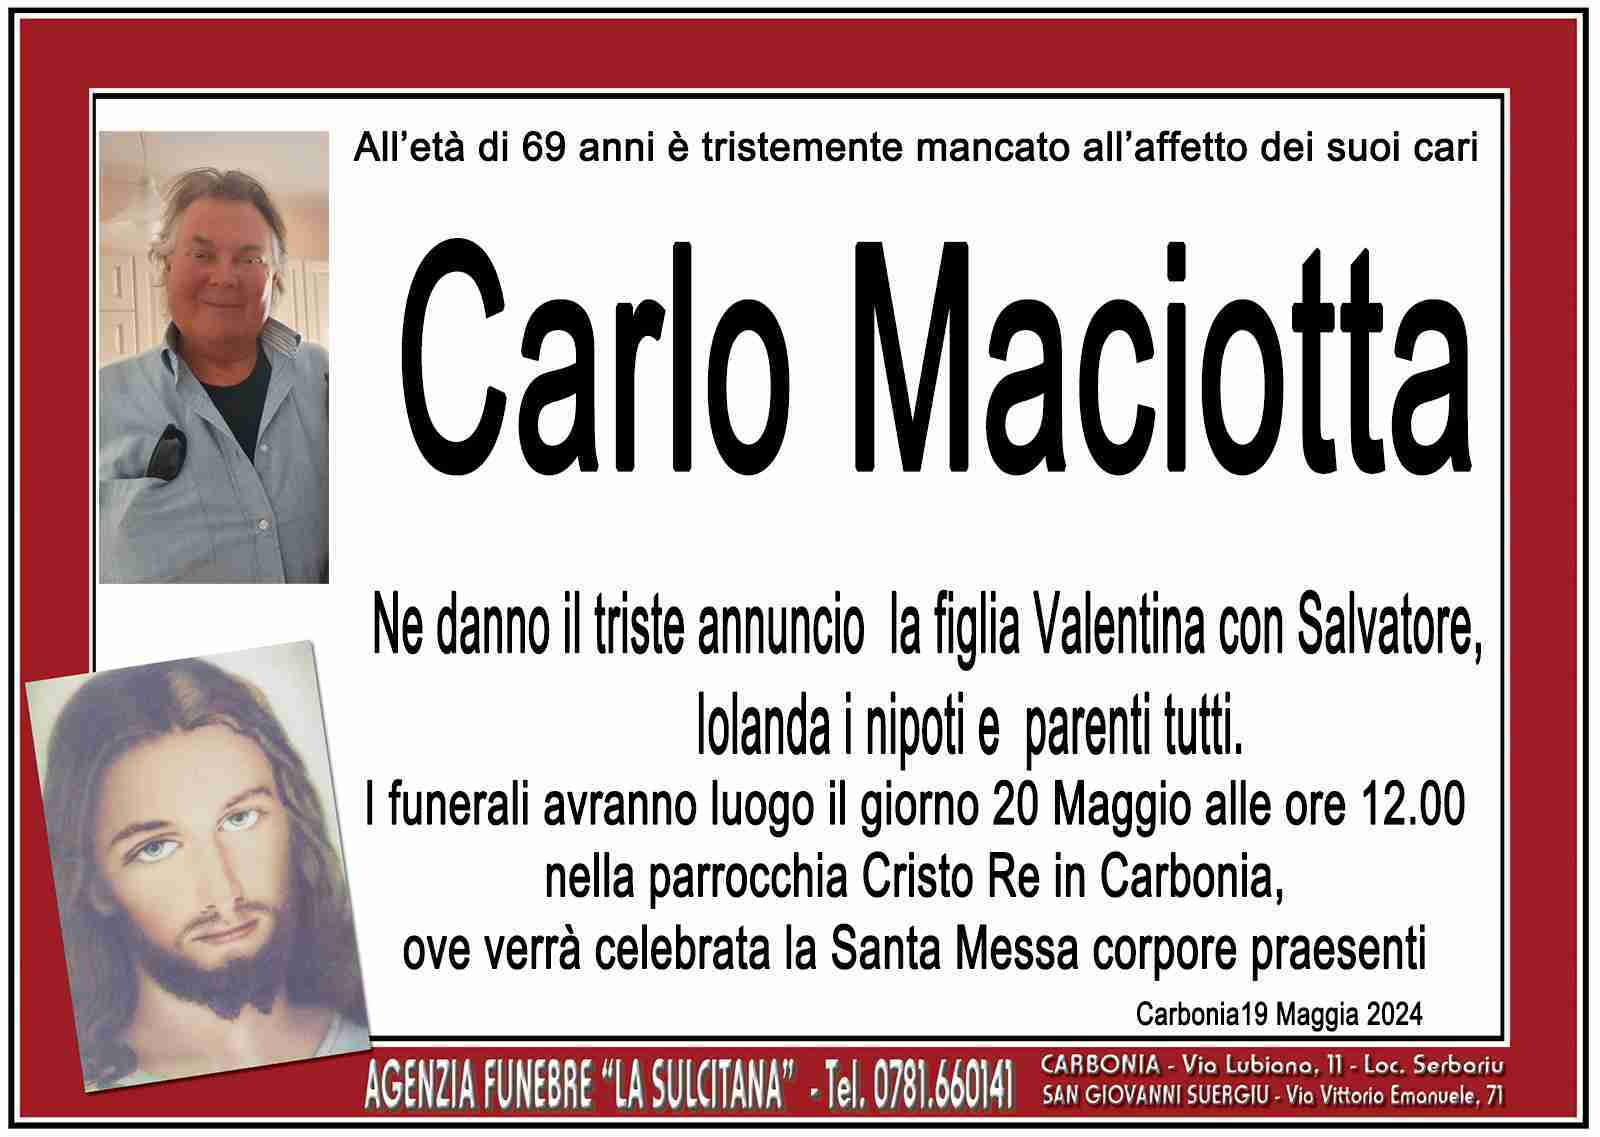 Carlo Maciotta